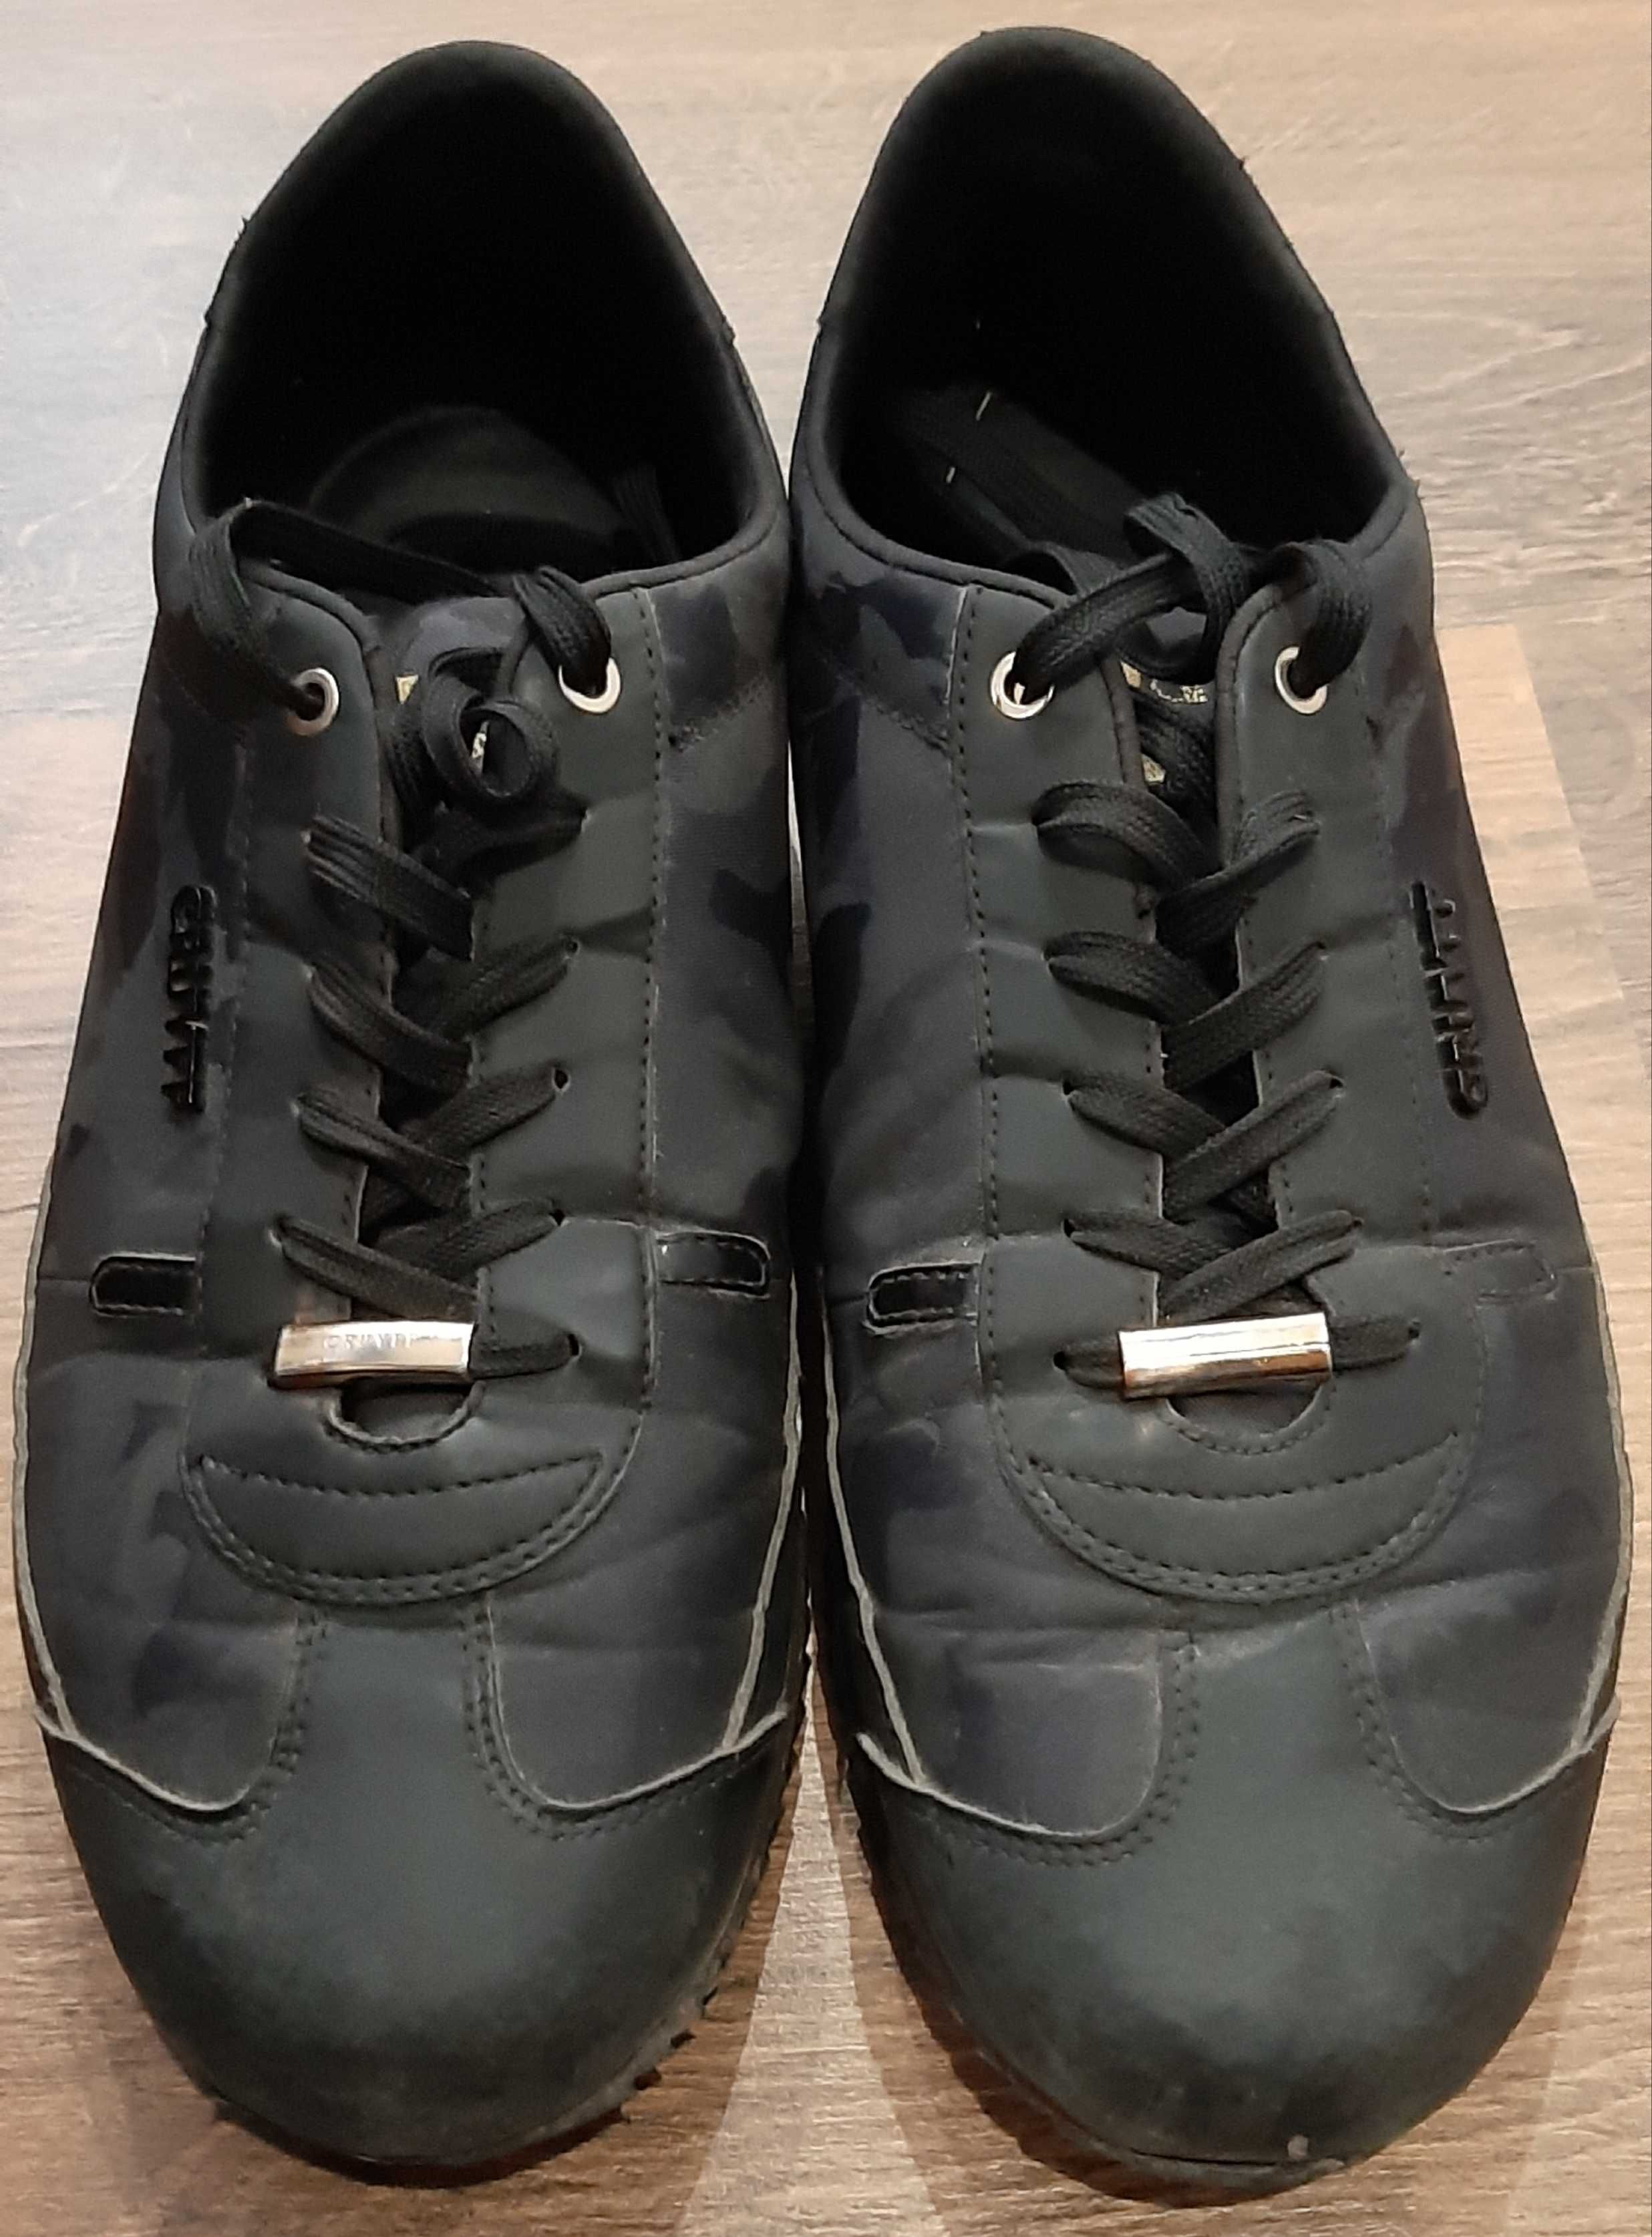 Обувки Cruyff-маркови, използвани